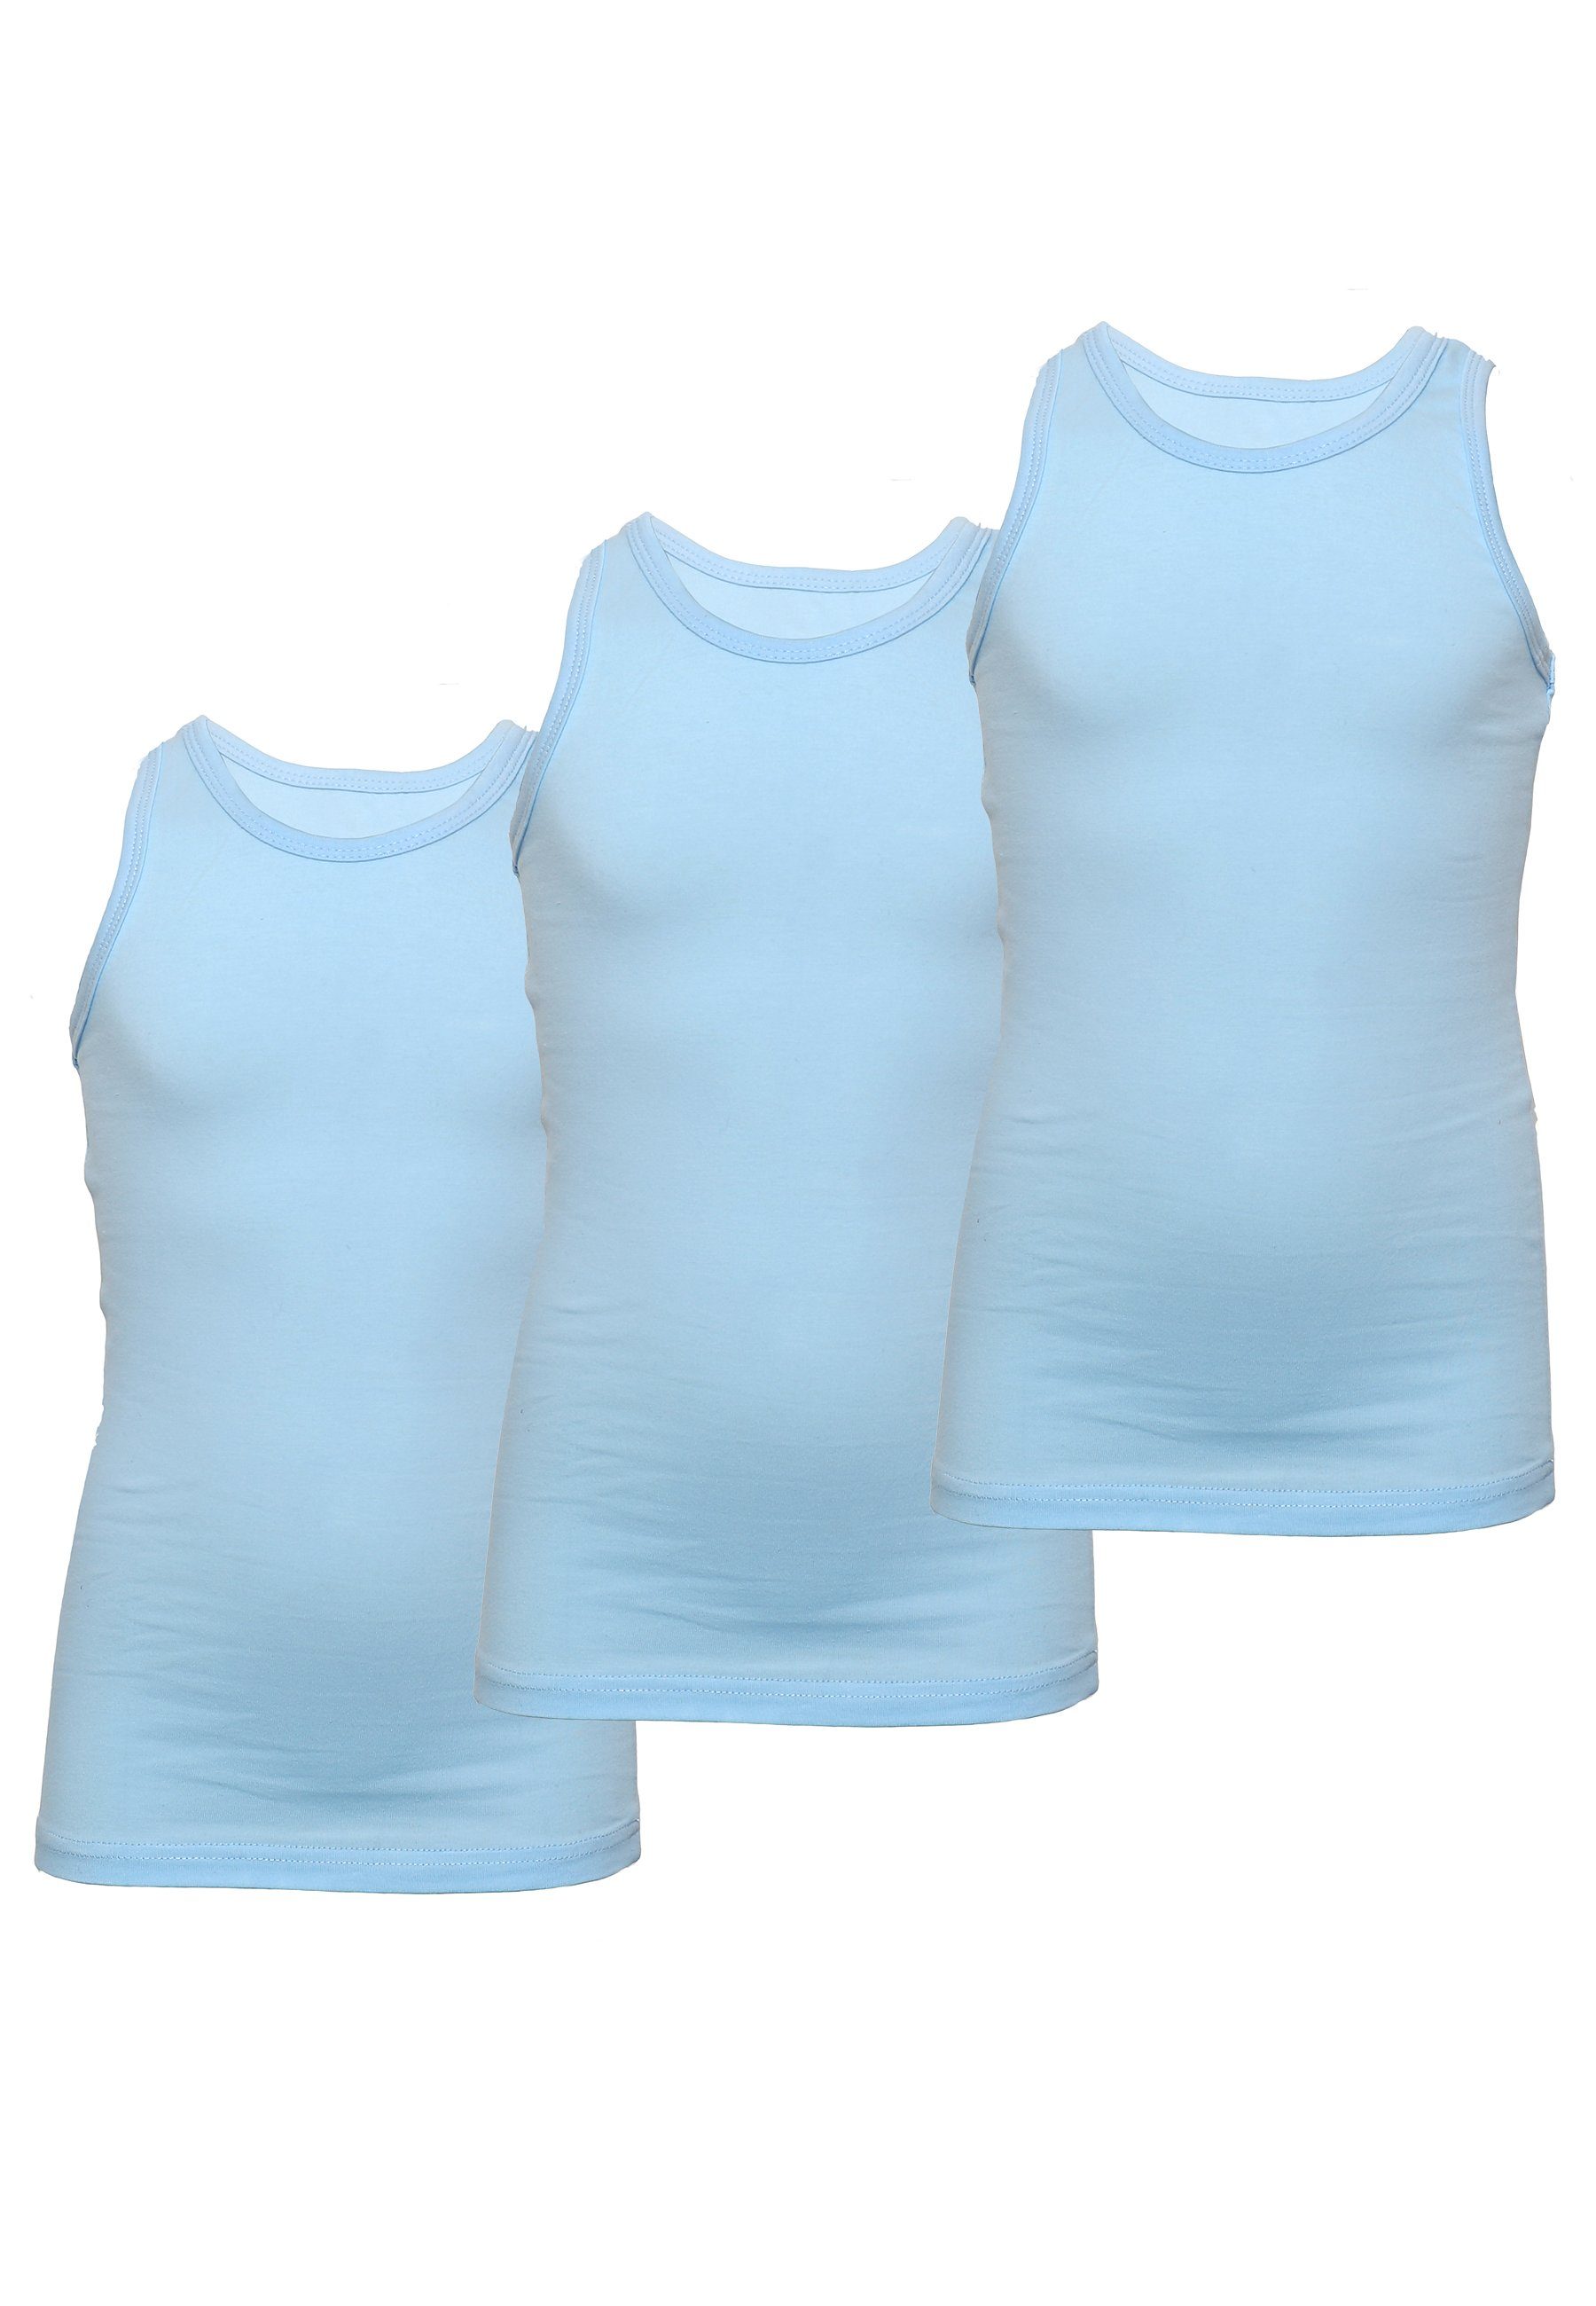 CARBURANT Unterhemd Unterhemden für Mädchen 3er-Pack (3er-Pack) im